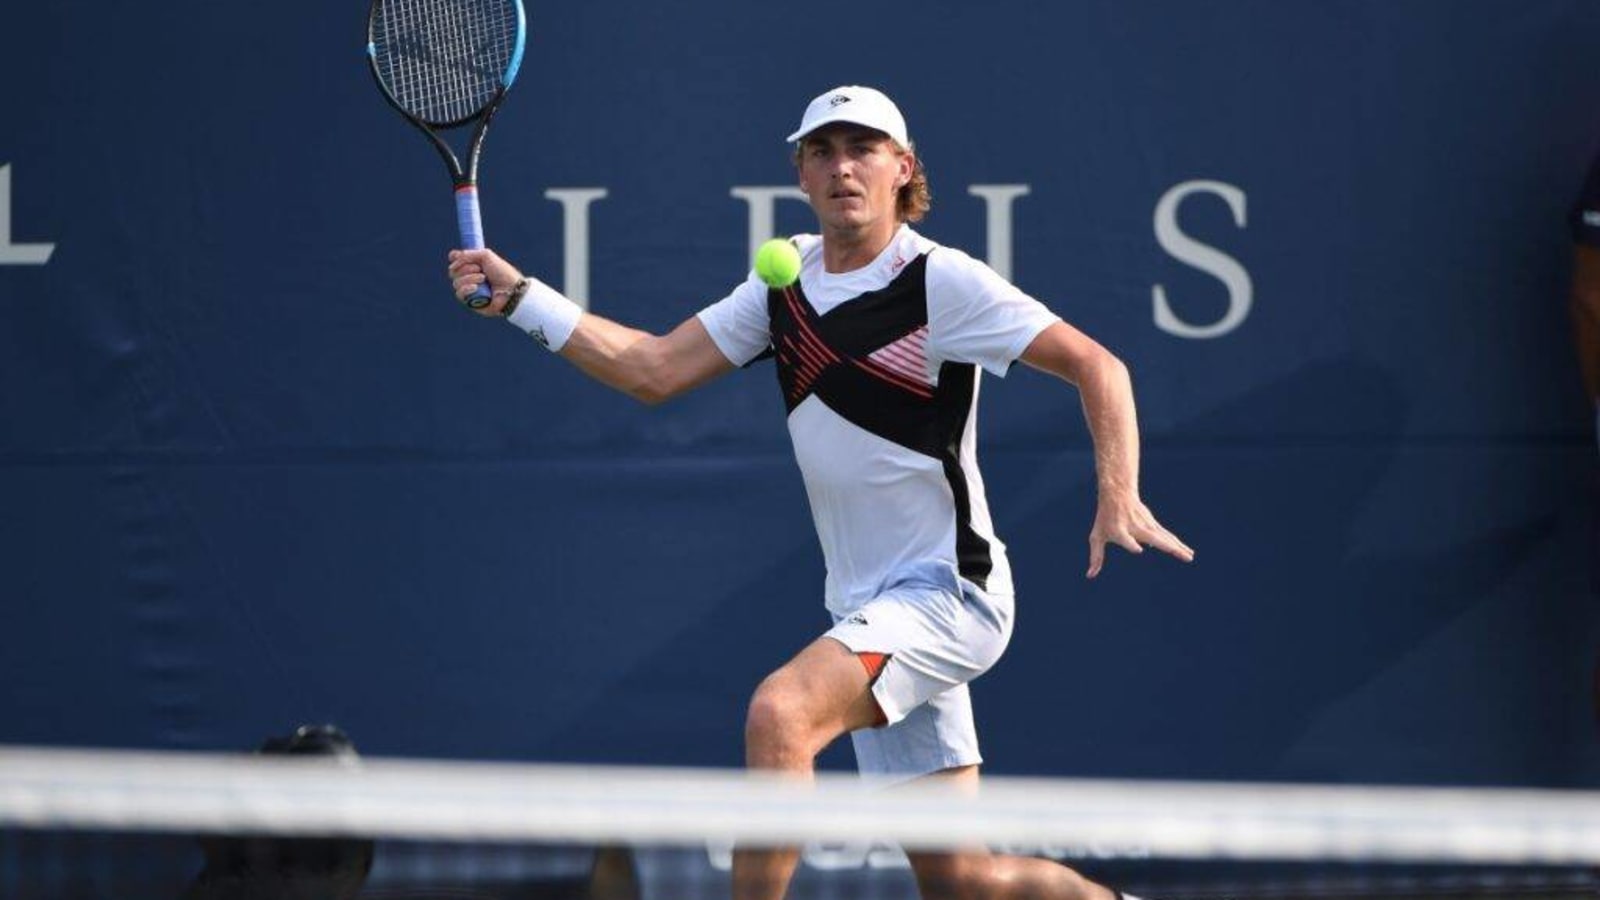 Challenger Tour Weekly Recap: 17-year-old Jakub Mensik Wins in Prague